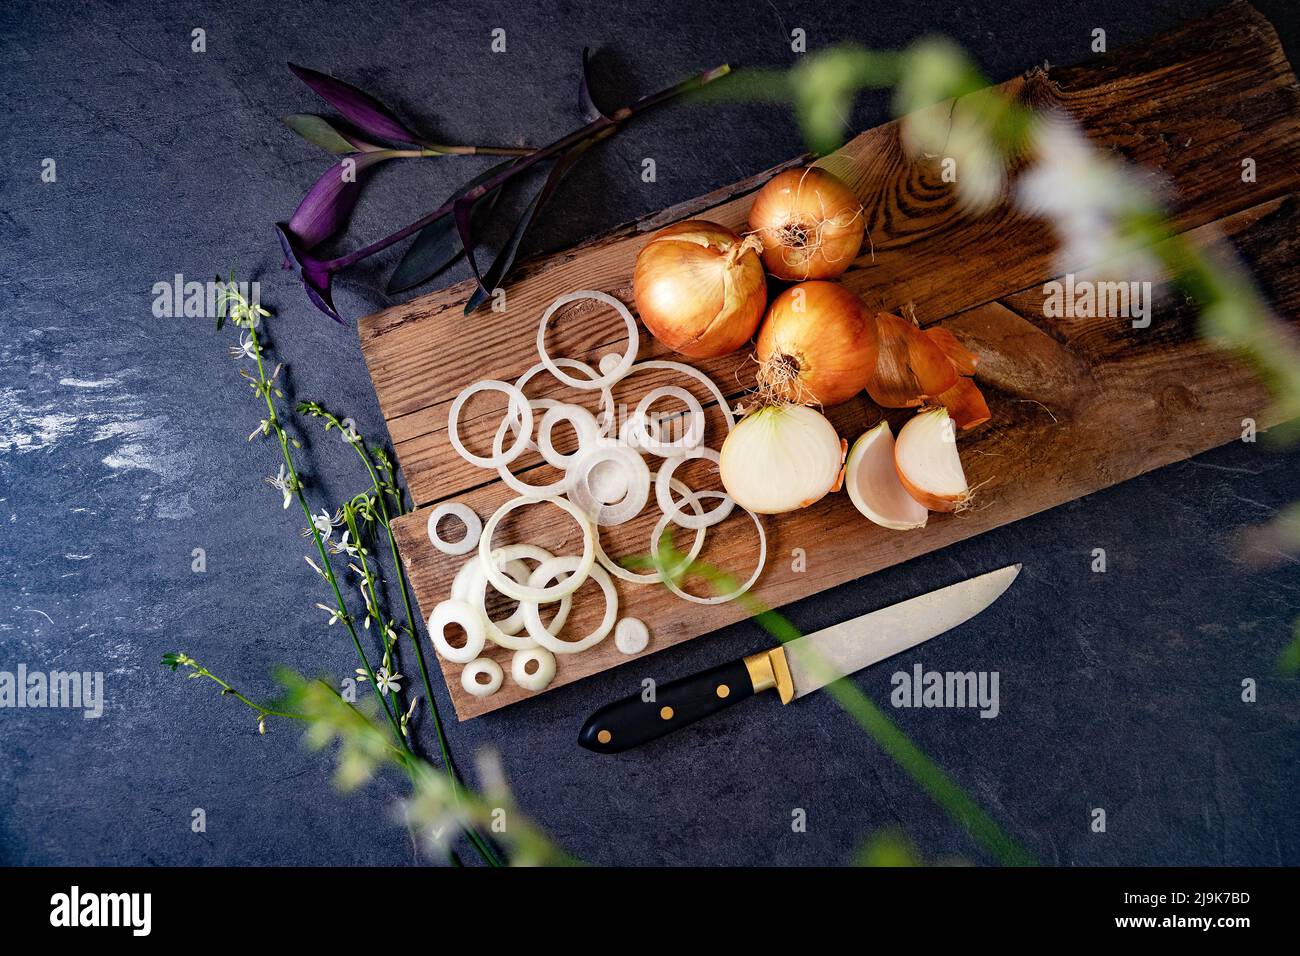 Un sacco di cipolle in un cesto e piatti su un fondo scuro ed elegante textural scuro. Fate rosolare le cipolle e le fette sul tagliere di legno. Foto Stock